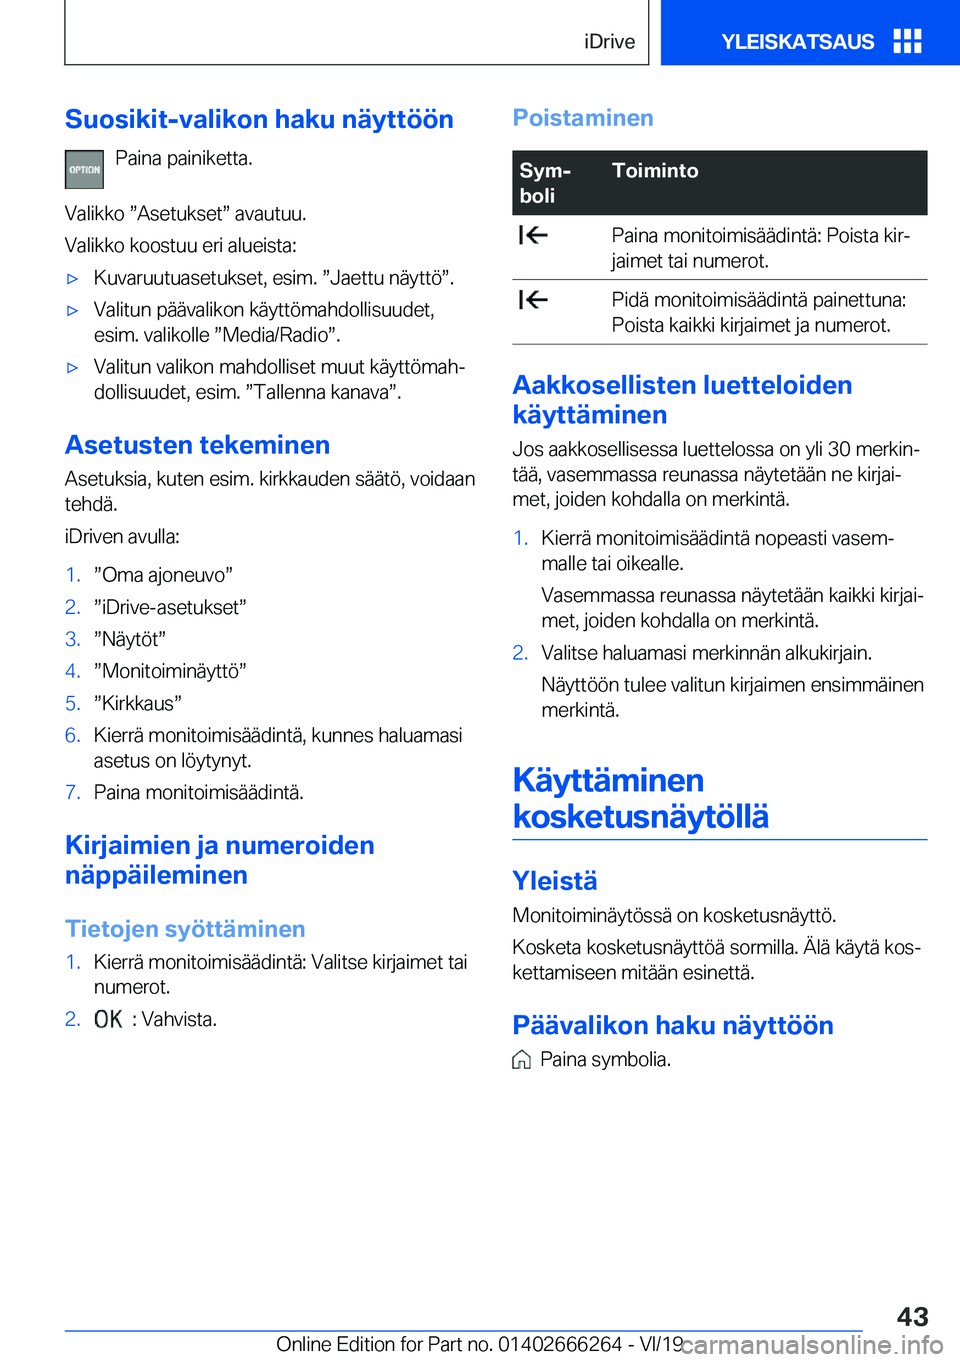 BMW 2 SERIES COUPE 2020  Omistajan Käsikirjat (in Finnish) �S�u�o�s�i�k�i�t�-�v�a�l�i�k�o�n��h�a�k�u��n�